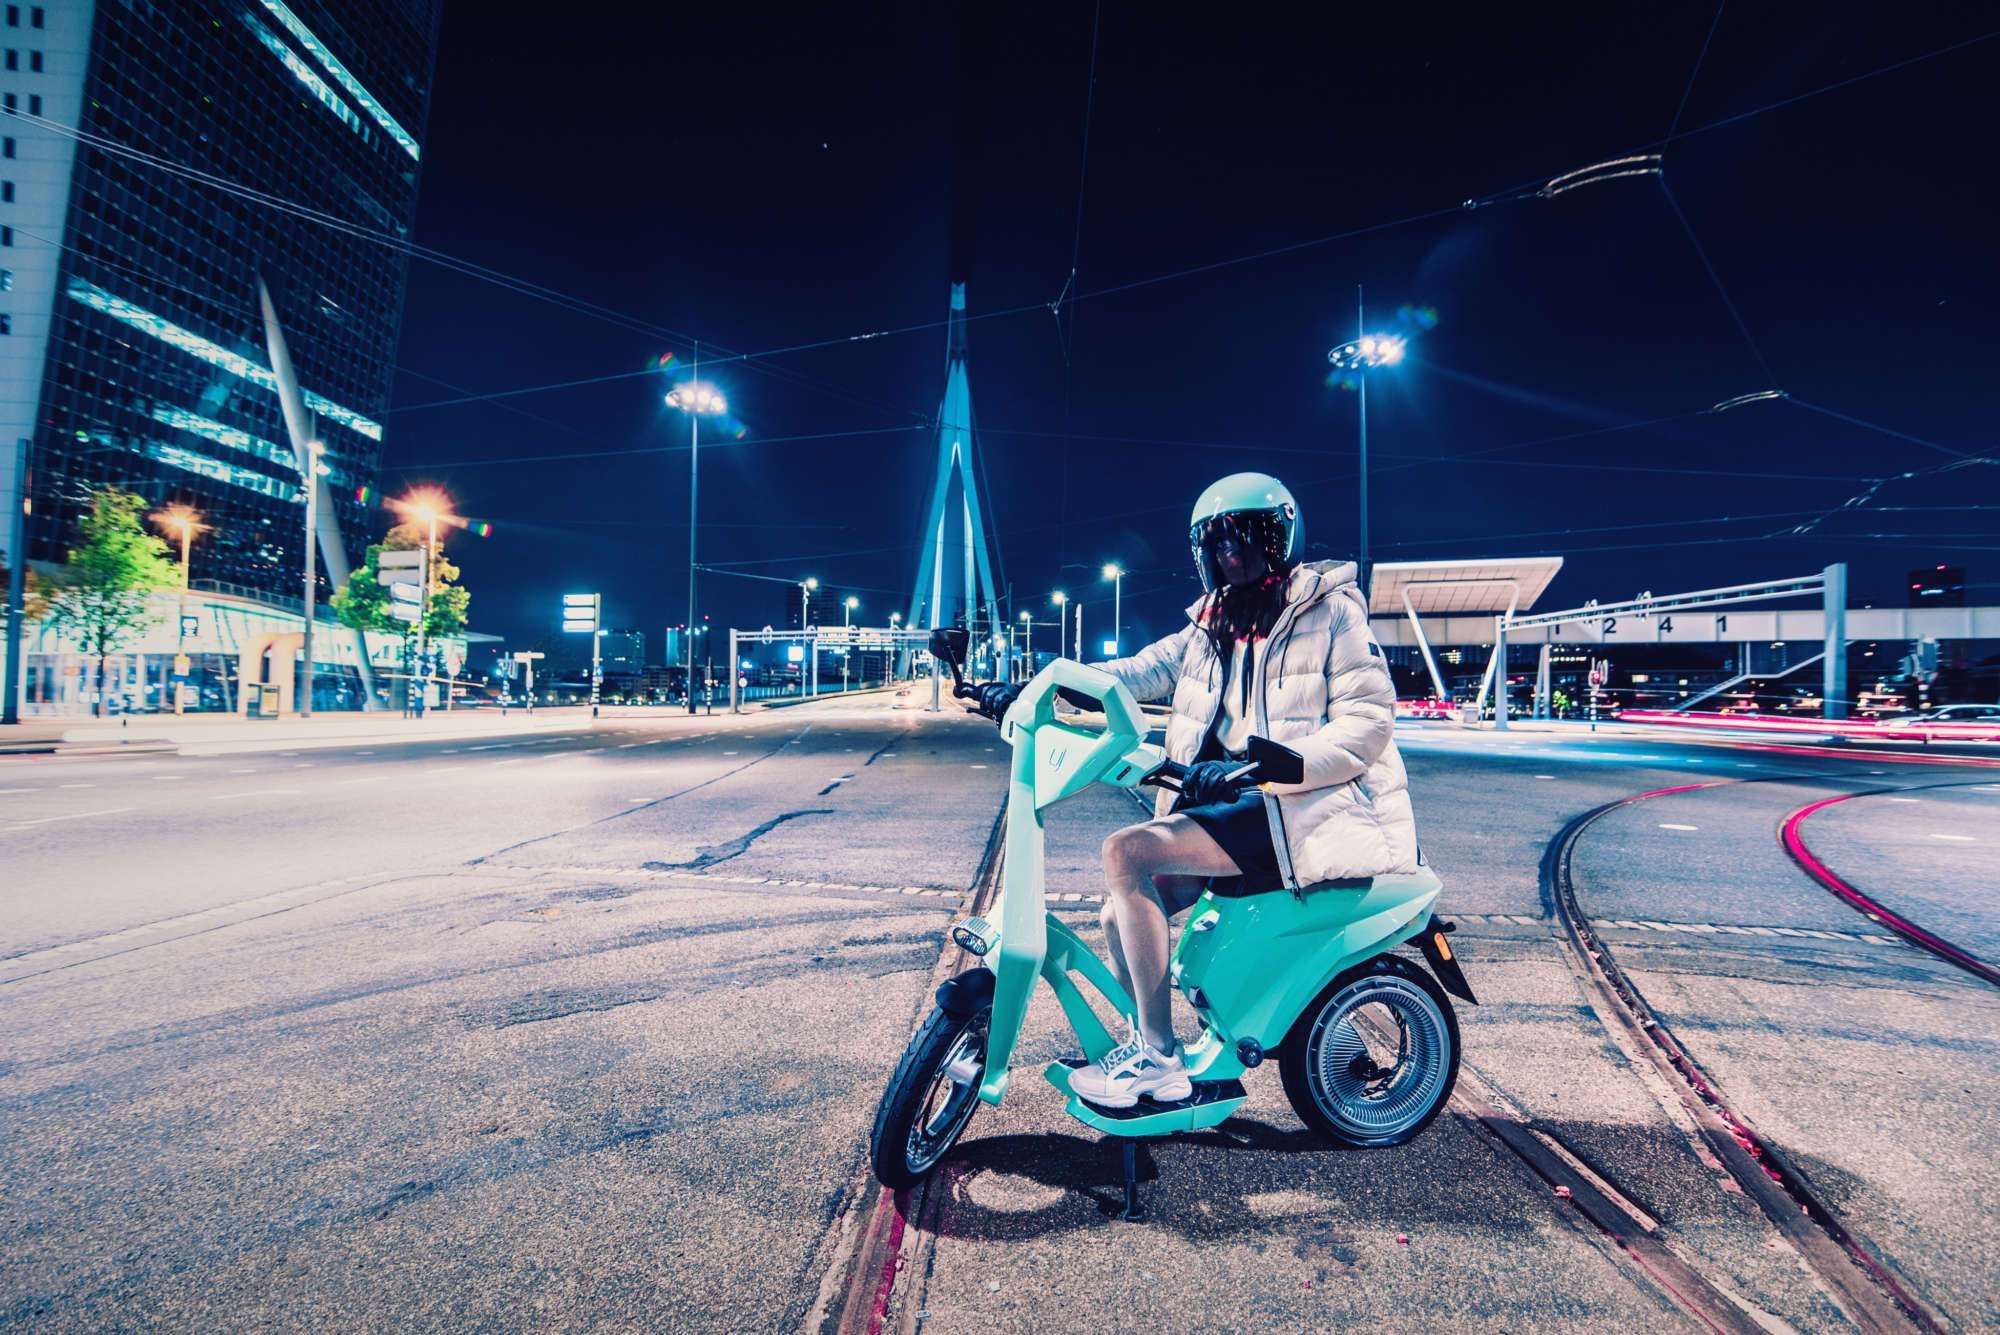 Frau mit Winterjacke und Motorradhelm sitzt auf einem türkisfarbenen UJET-Roller, die Umgebung hat Großstadtcharakter, es ist dunkel/Nacht.